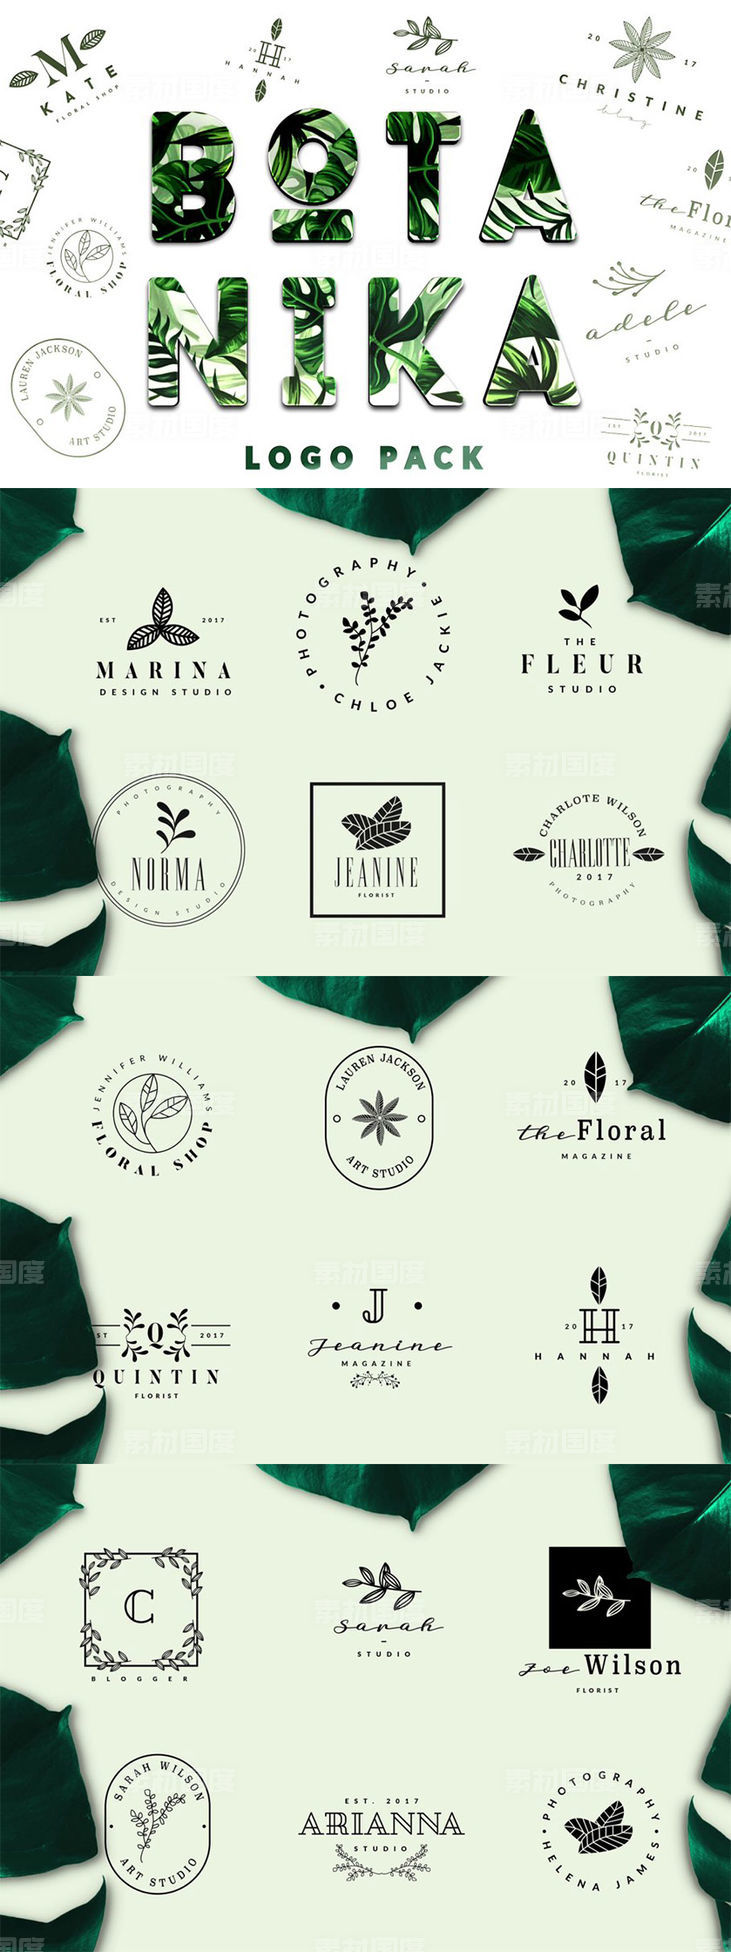 简约优雅品牌公司Logo设计模板 BOTANIKA Logo Pack